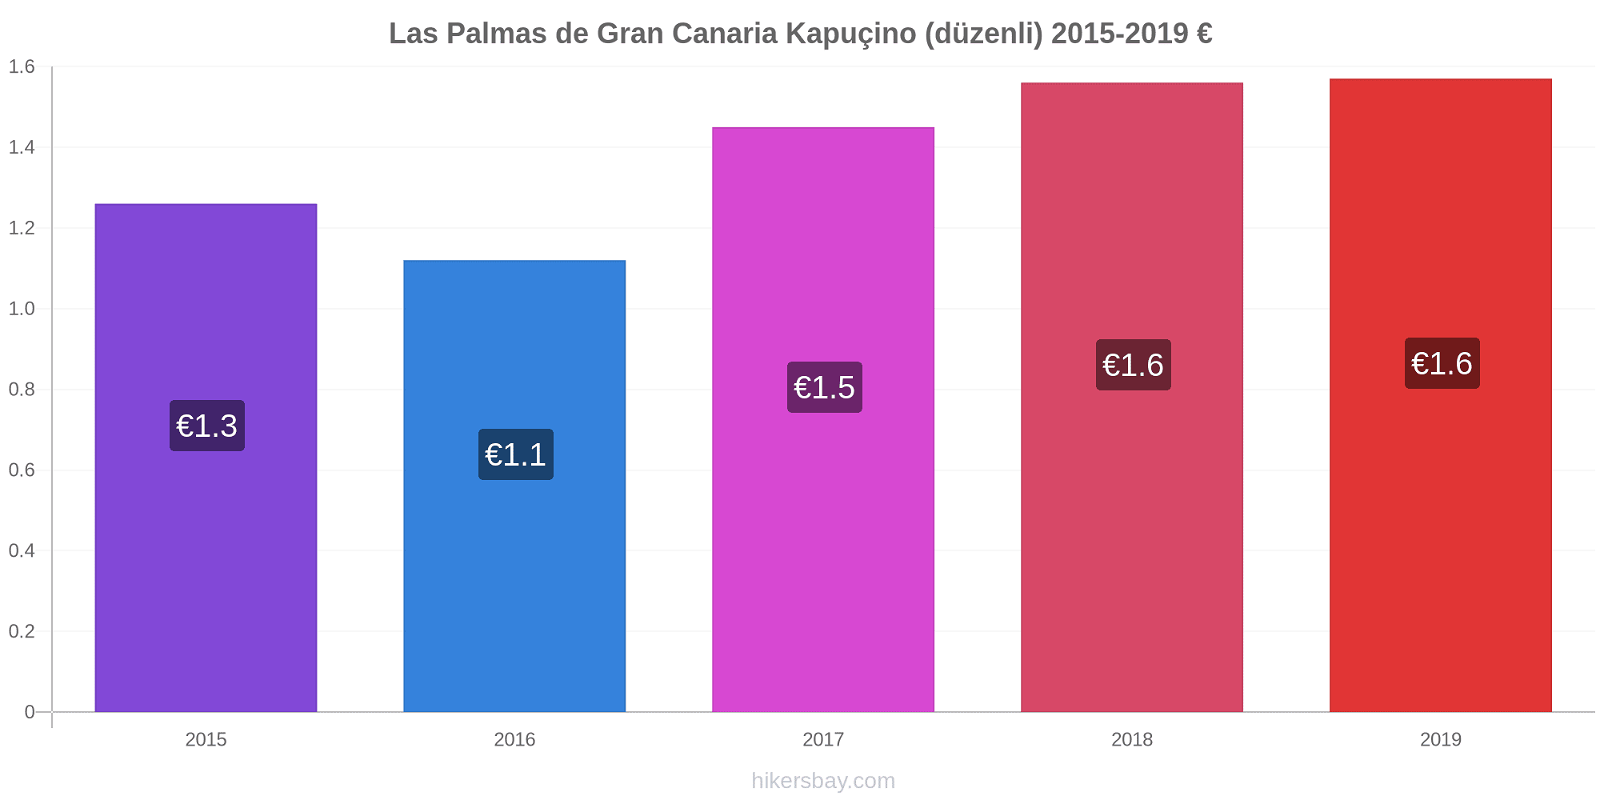 Las Palmas de Gran Canaria fiyat değişiklikleri Kapuçino (düzenli) hikersbay.com